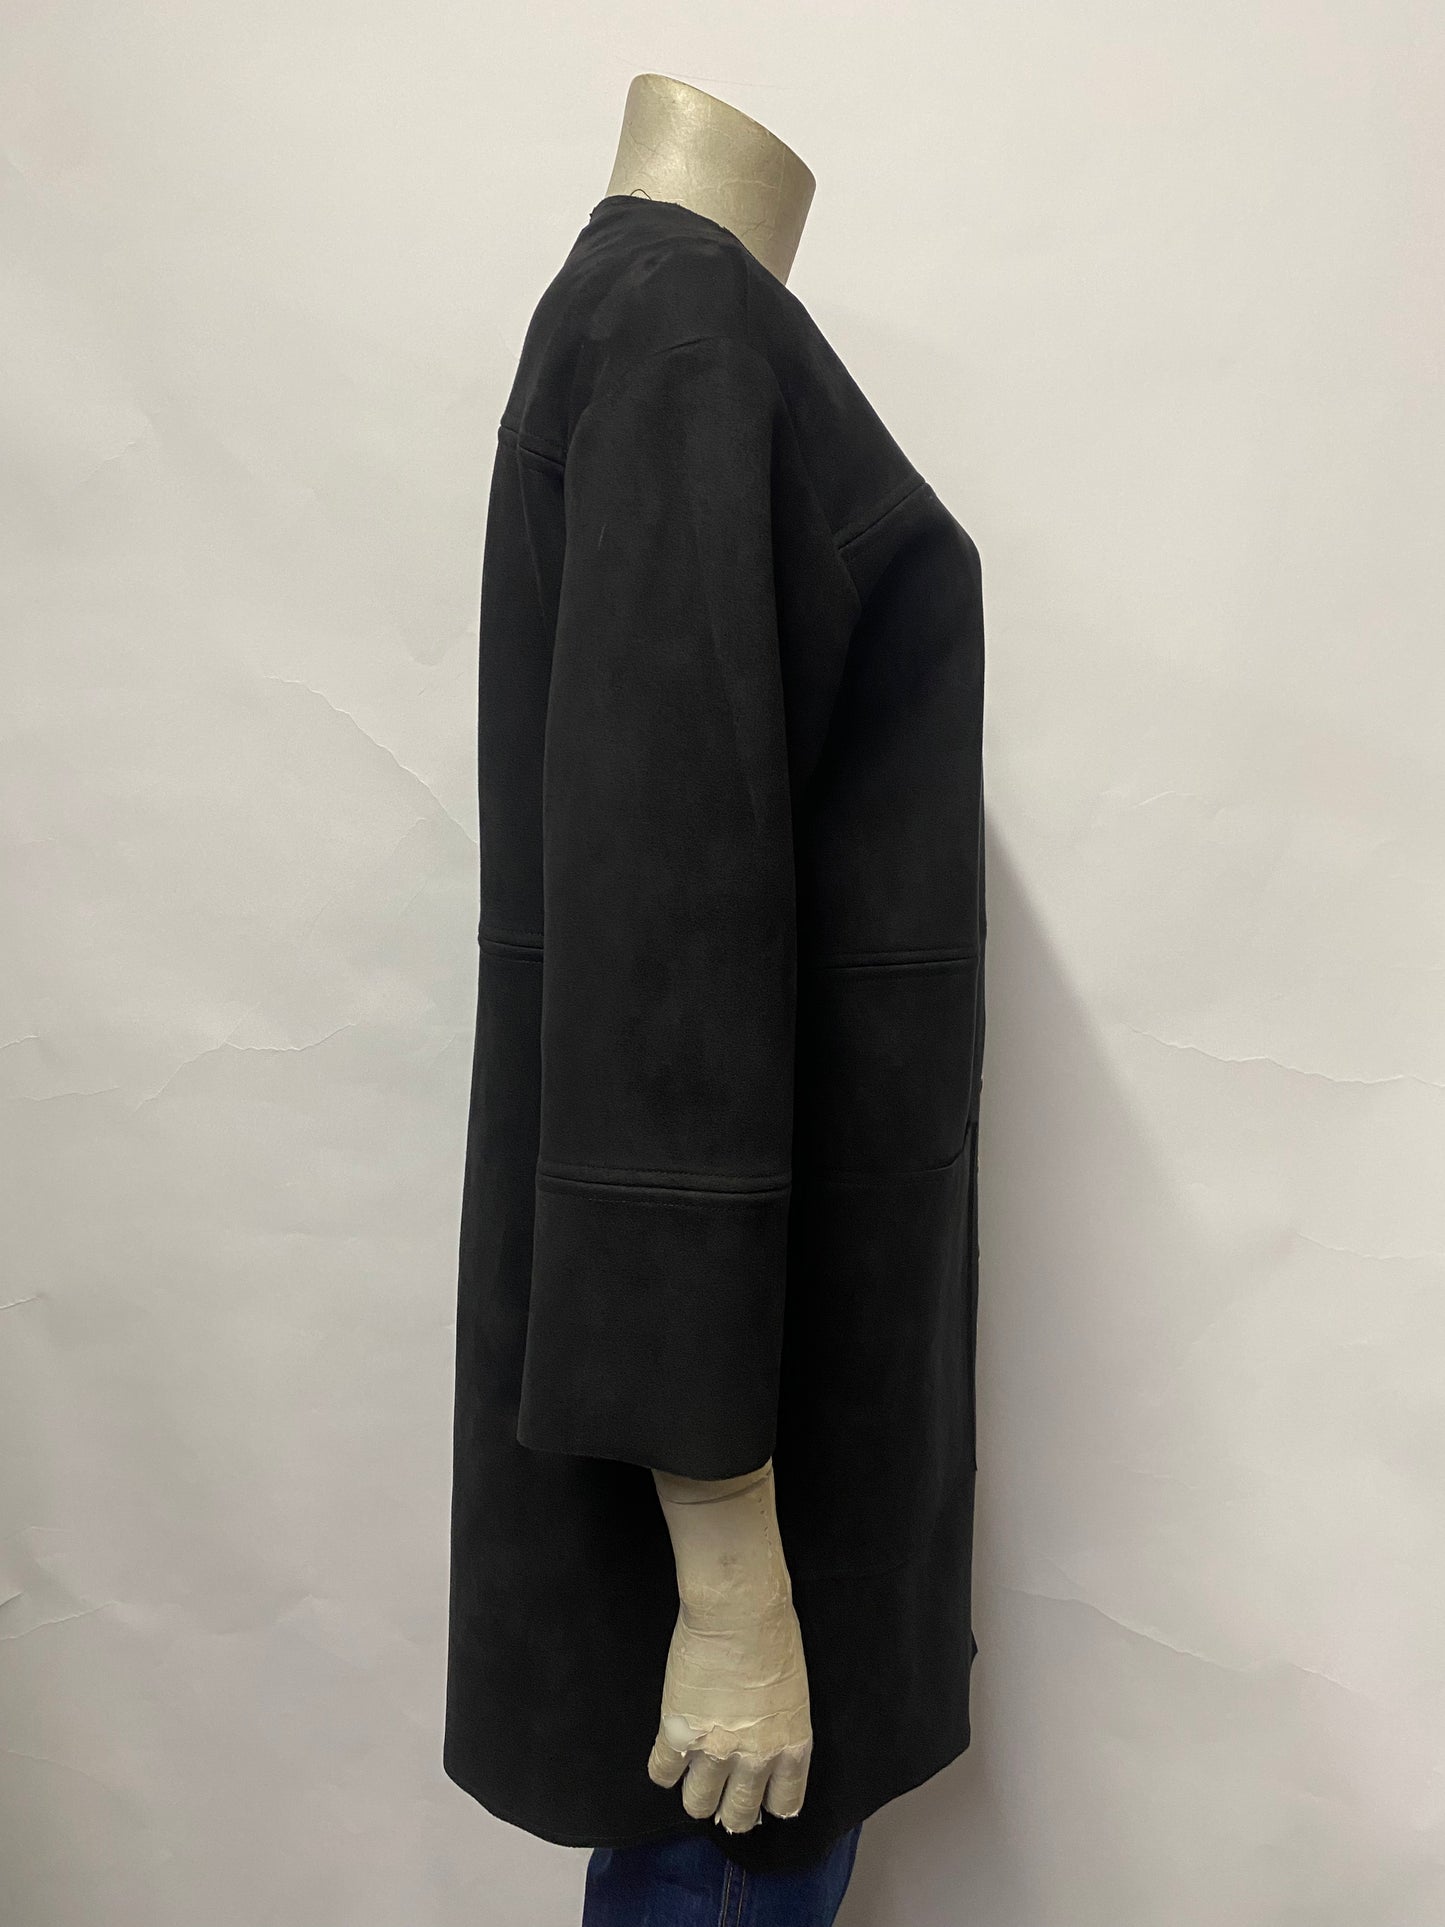 ZARA Black Faux Suede Longline Jacket Small